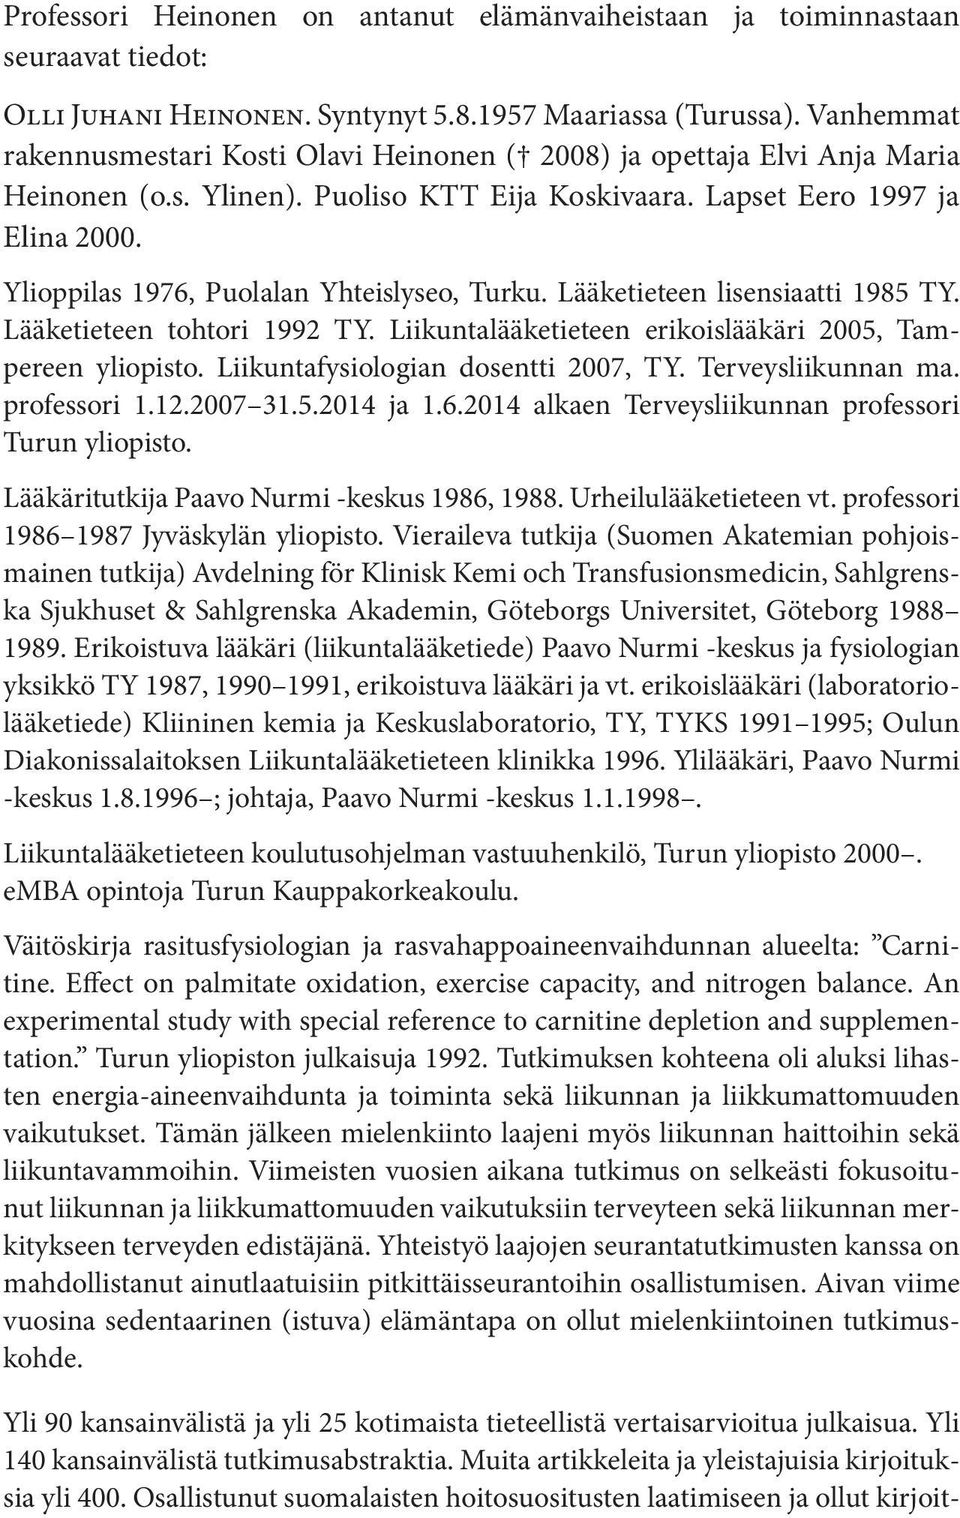 Ylioppilas 1976, Puolalan Yhteislyseo, Turku. Lääketieteen lisensiaatti 1985 TY. Lääketieteen tohtori 1992 TY. Liikuntalääketieteen erikoislääkäri 2005, Tampereen yliopisto.